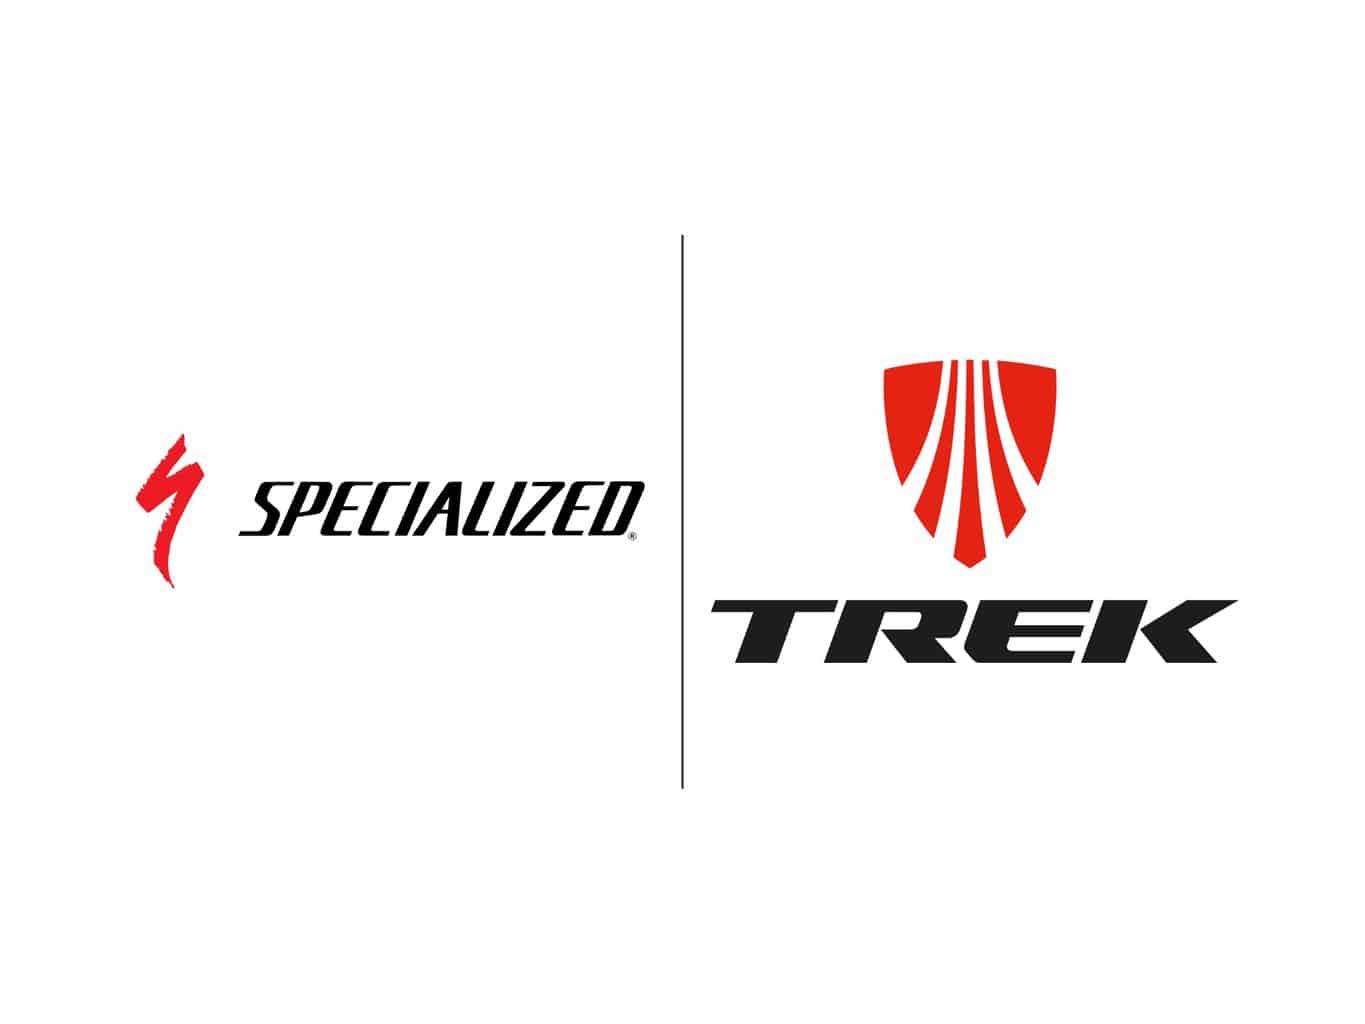 Specialized vs Trek Road Bikes